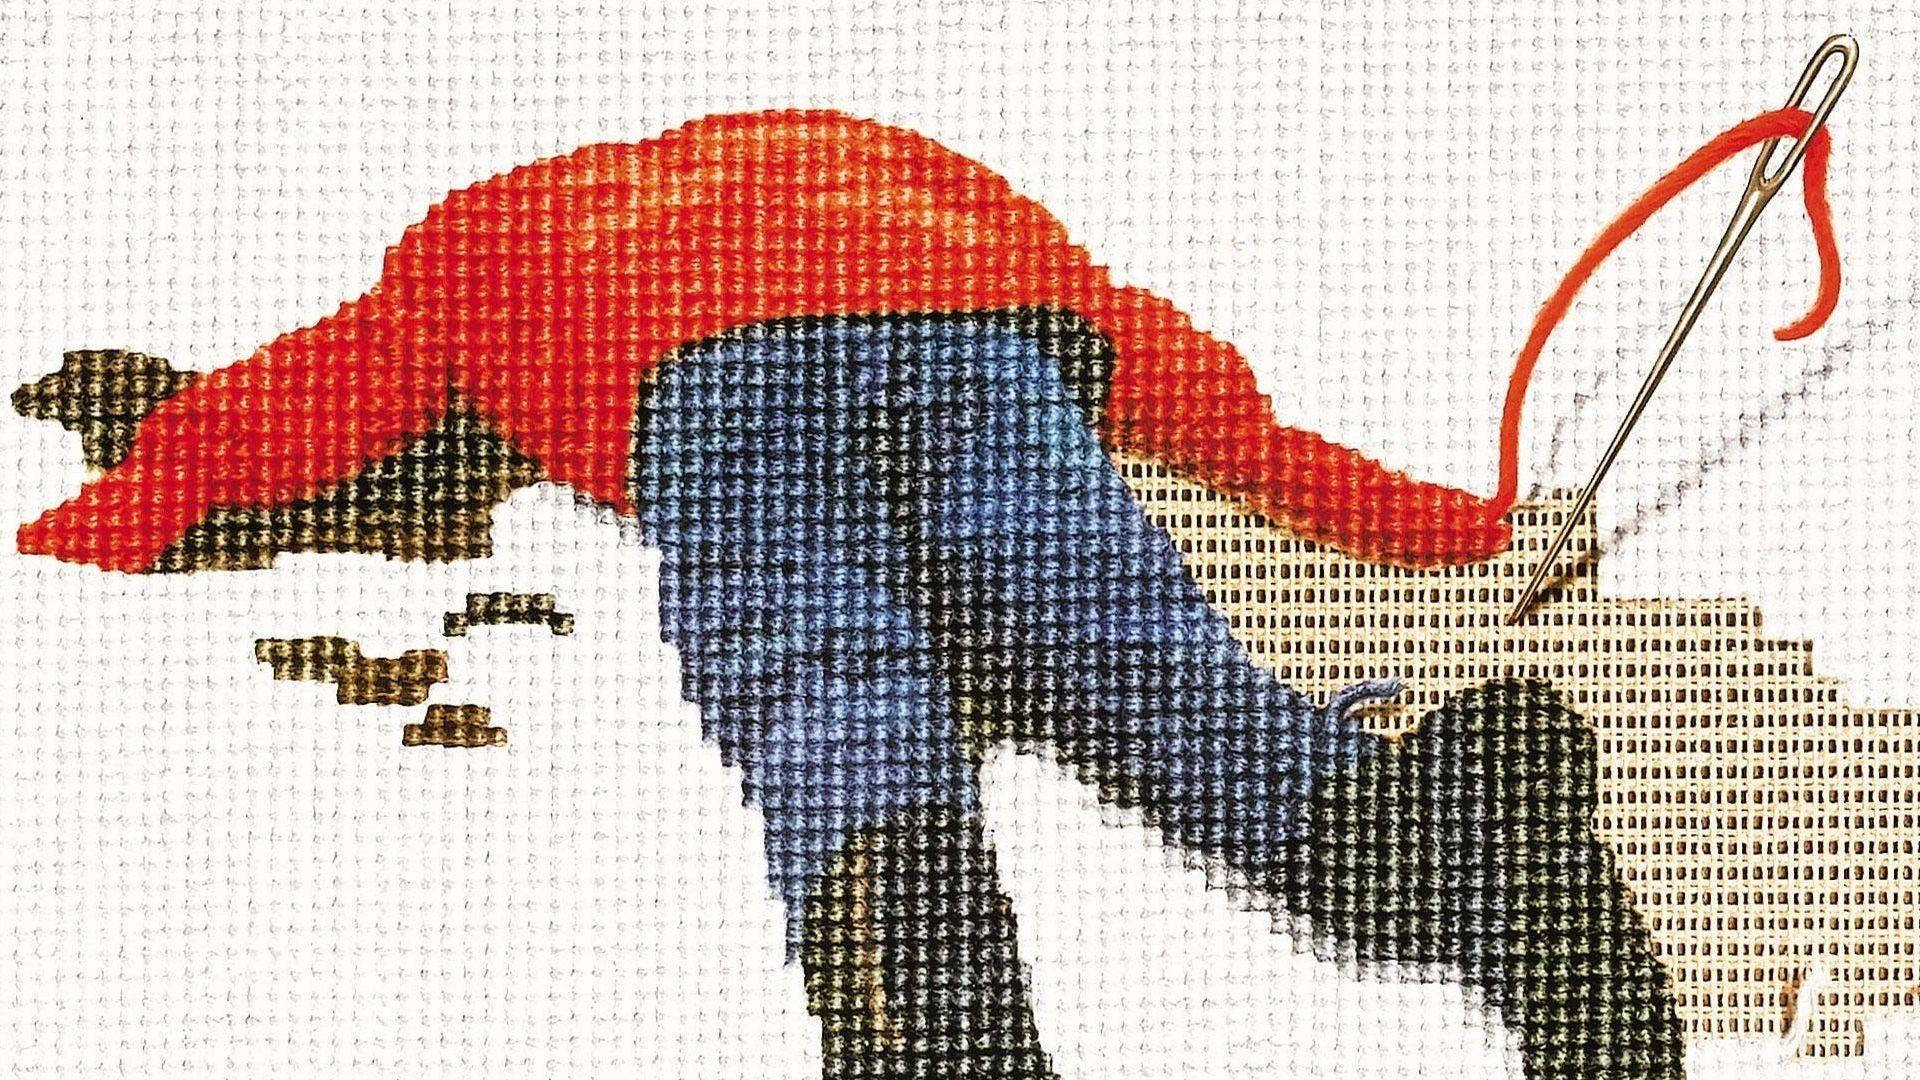 Fargo Pixelated Graphic Art Wallpaper